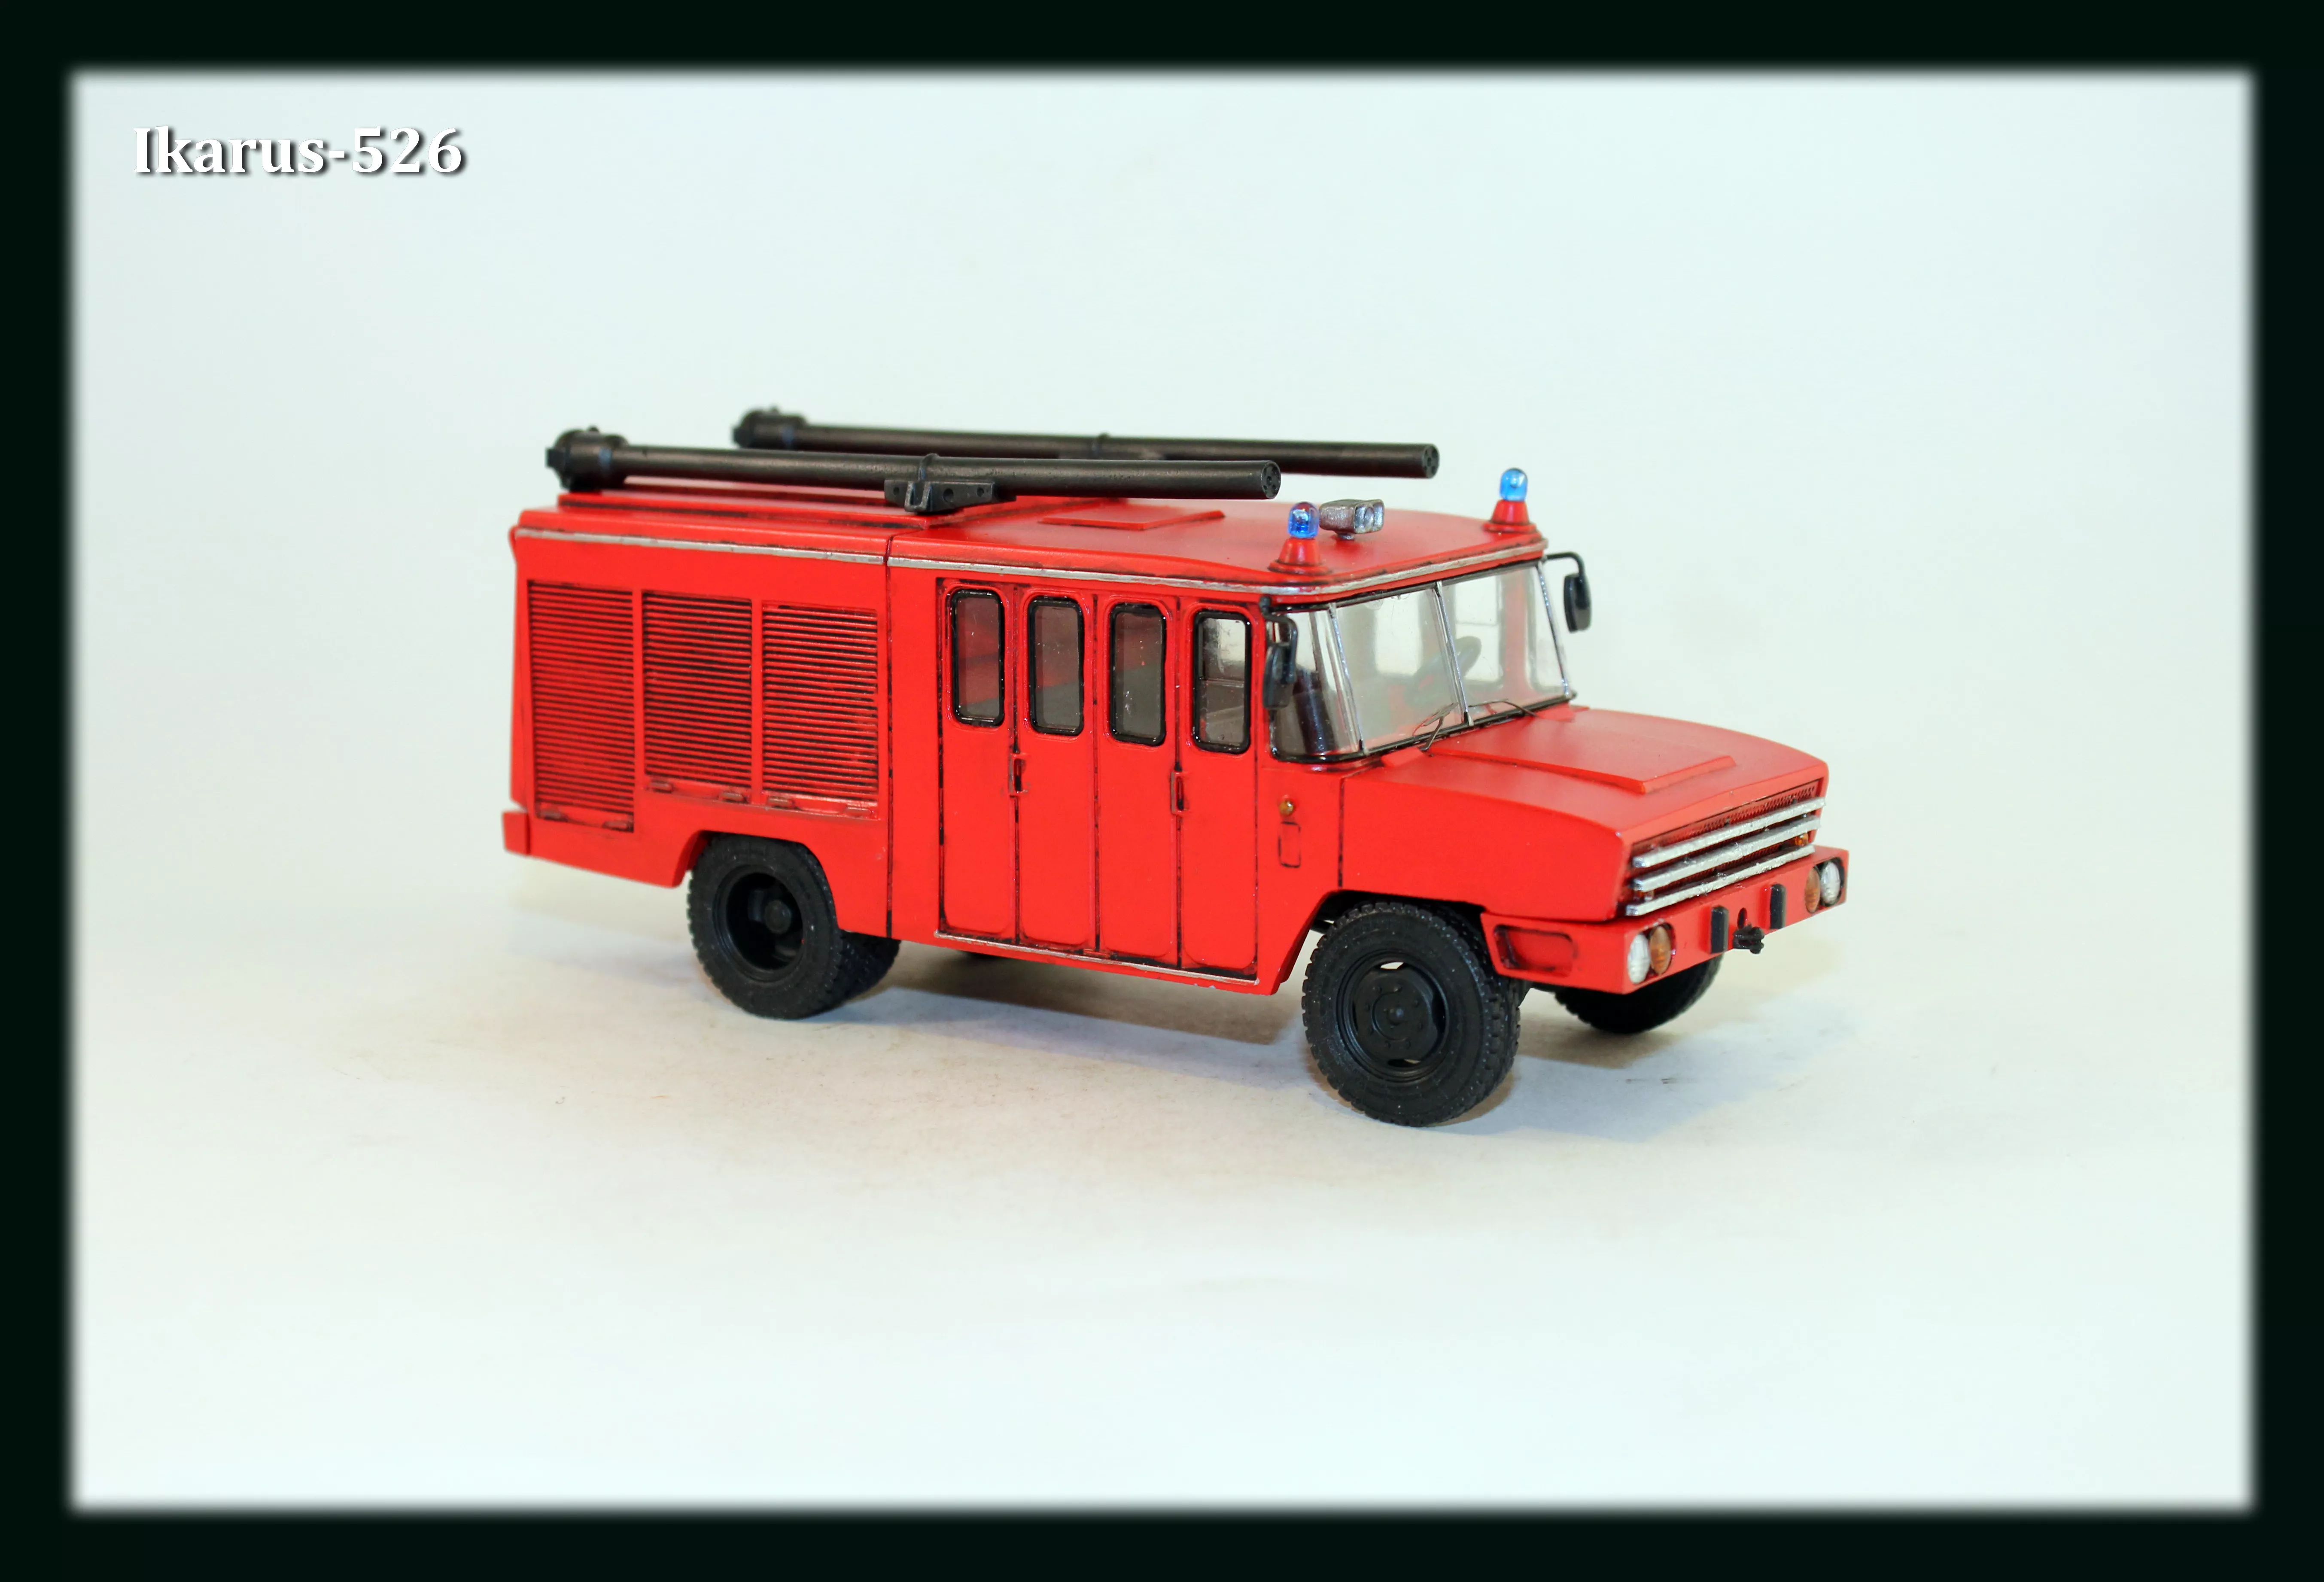 Сборная модель Пожарная автоцистерна Ikarus-526